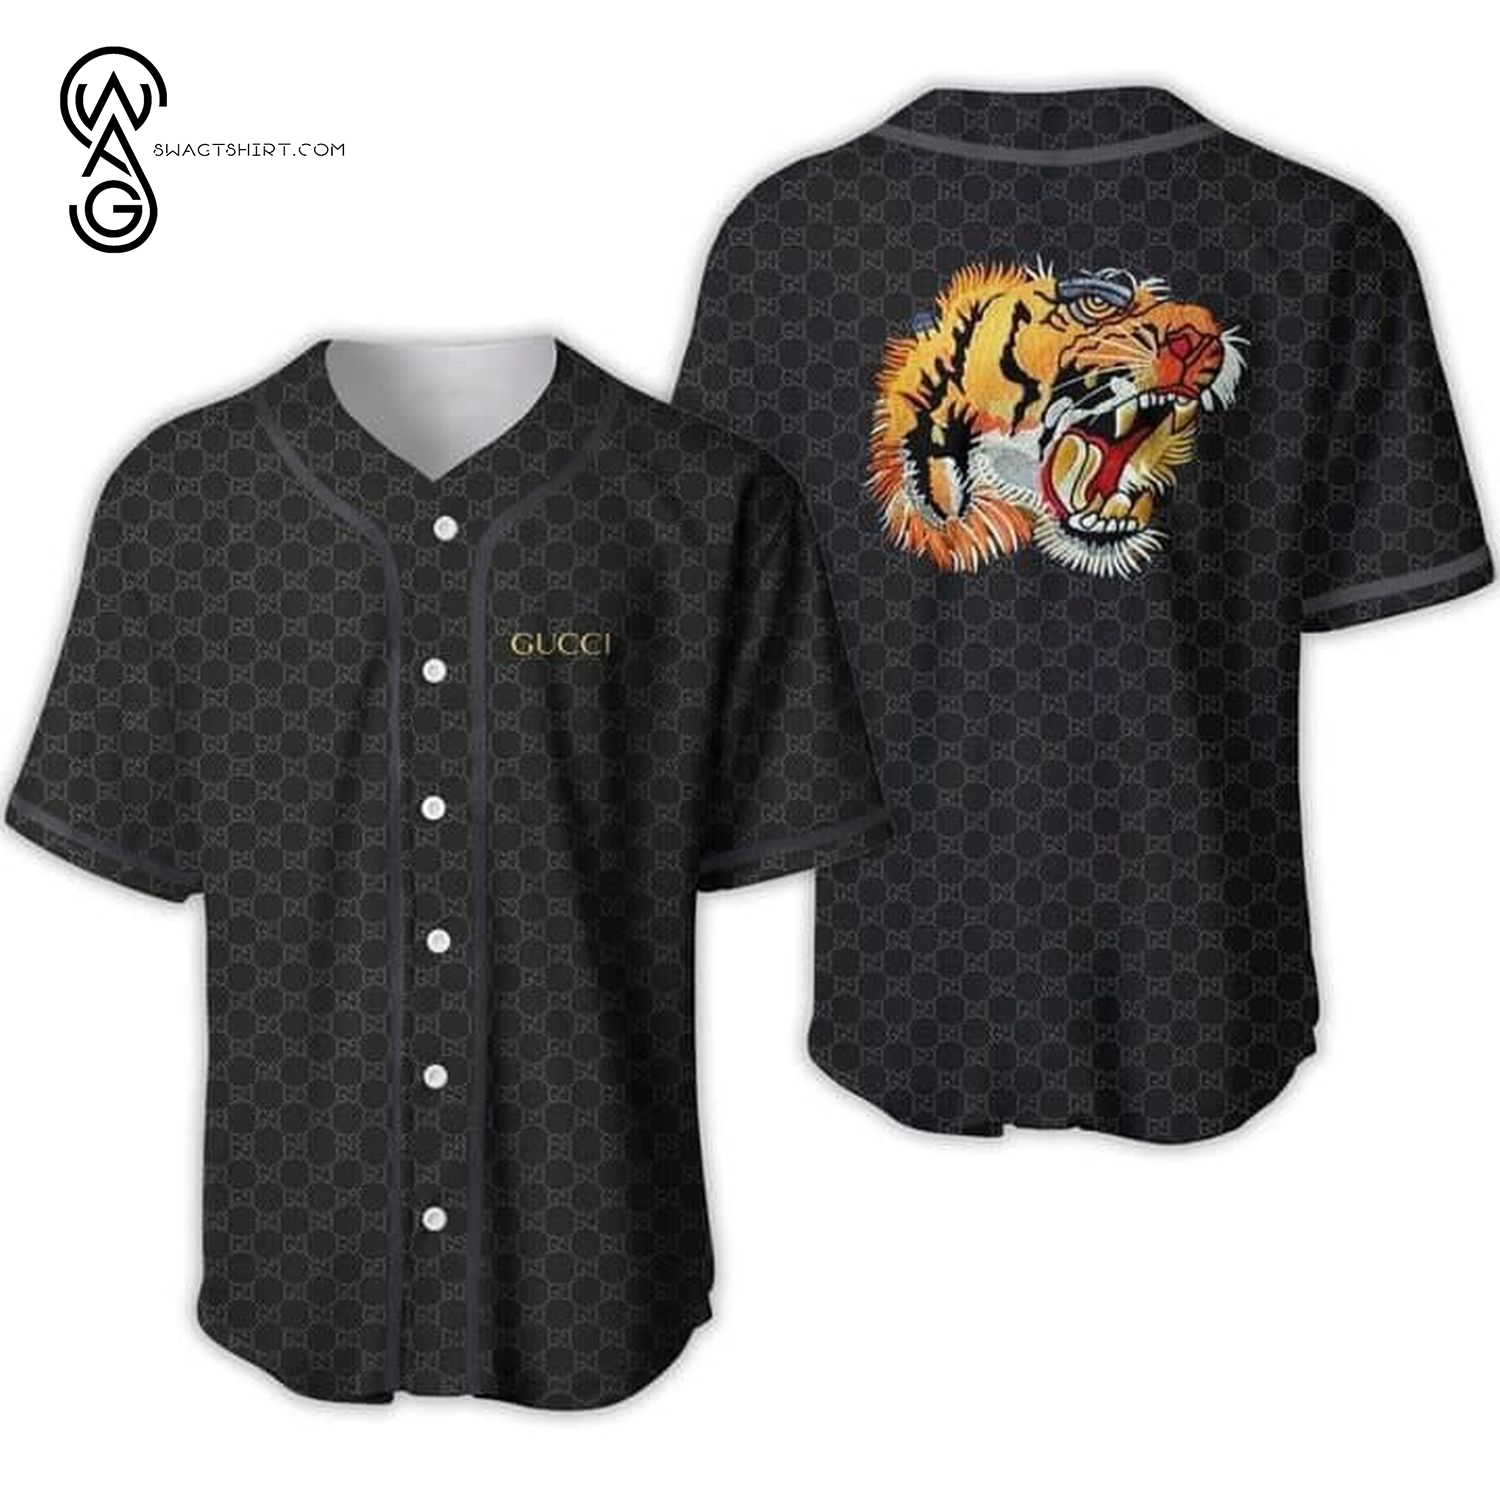 Gucci Tiger Full Printed Baseball Jersey